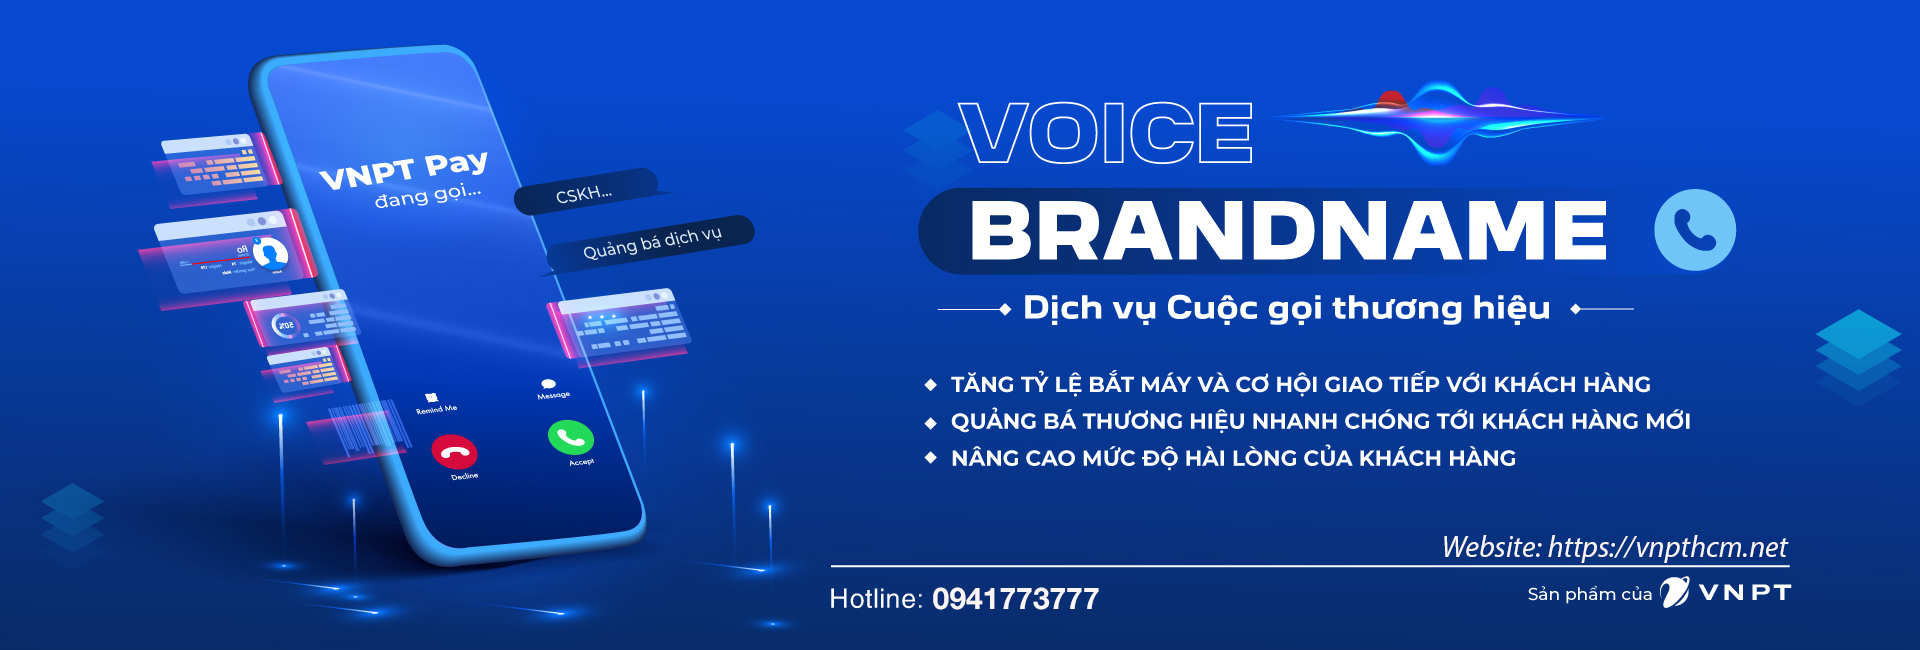 Voice Brandname VNPT